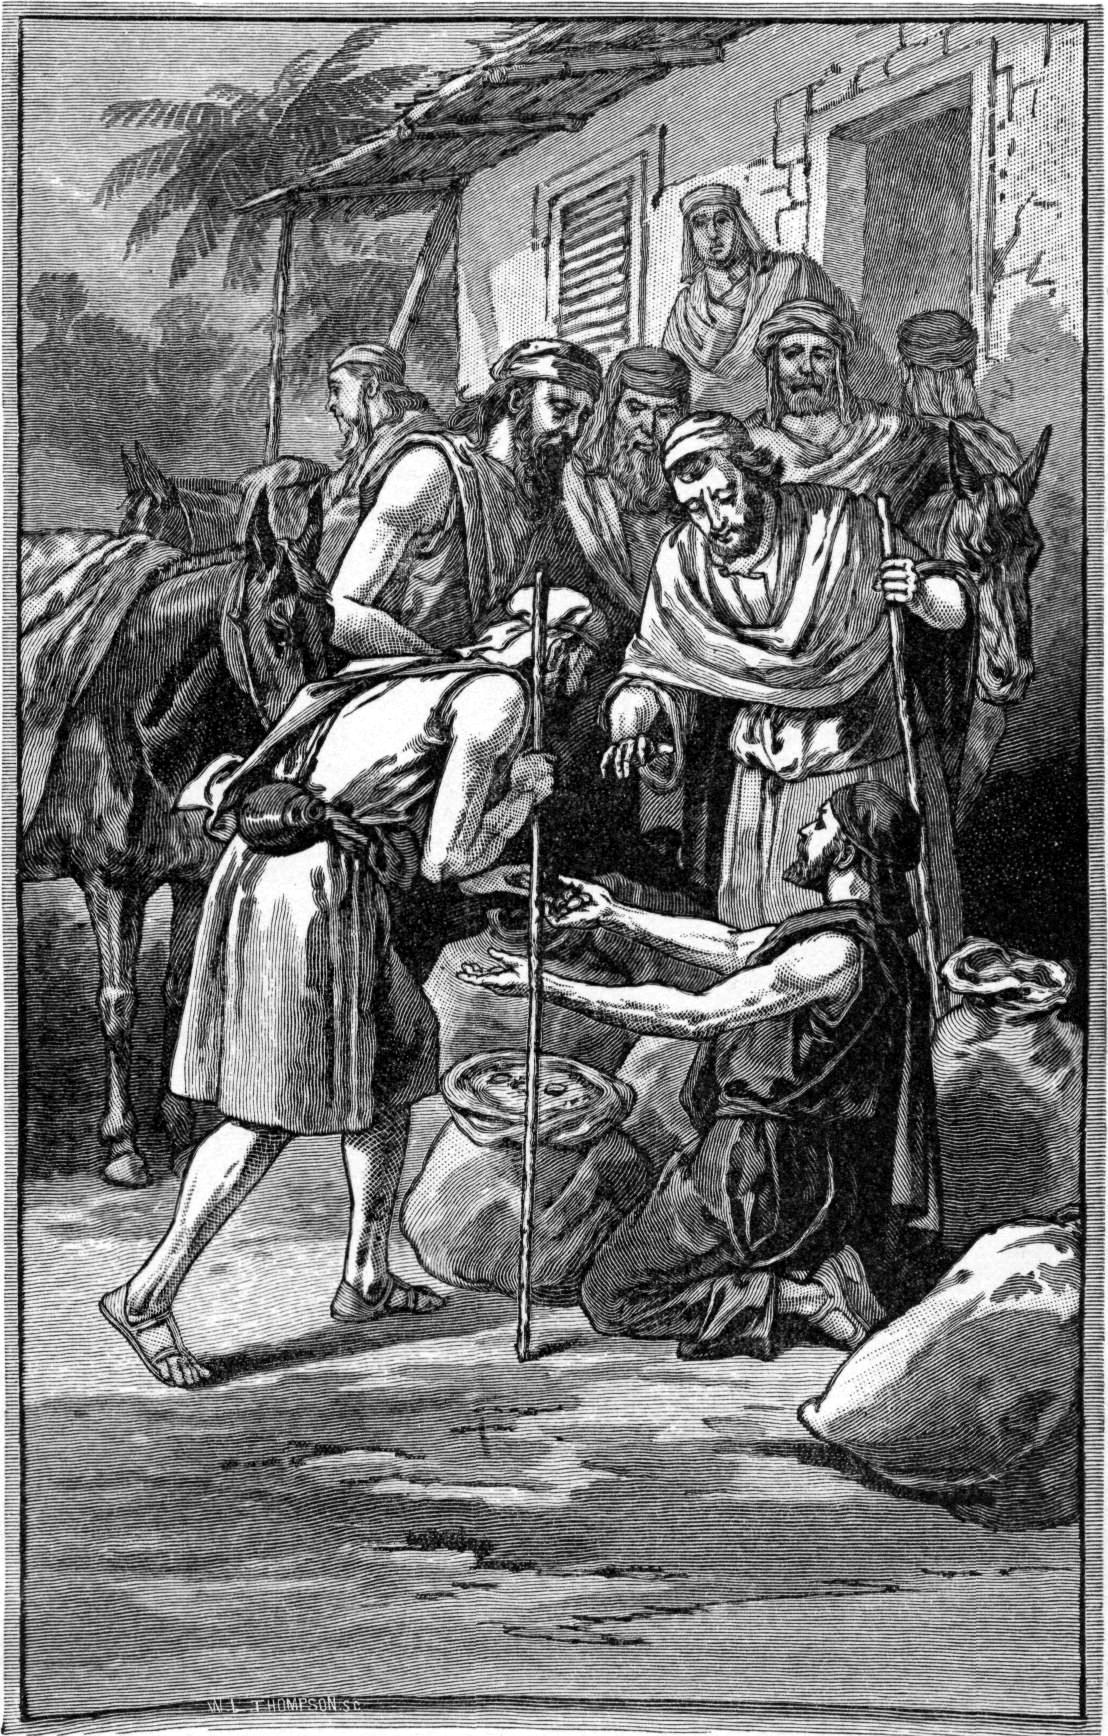 Братья Йосефа обнаруживают в своих мешках серебро. Иллюстрация к изданию Библии, 1897